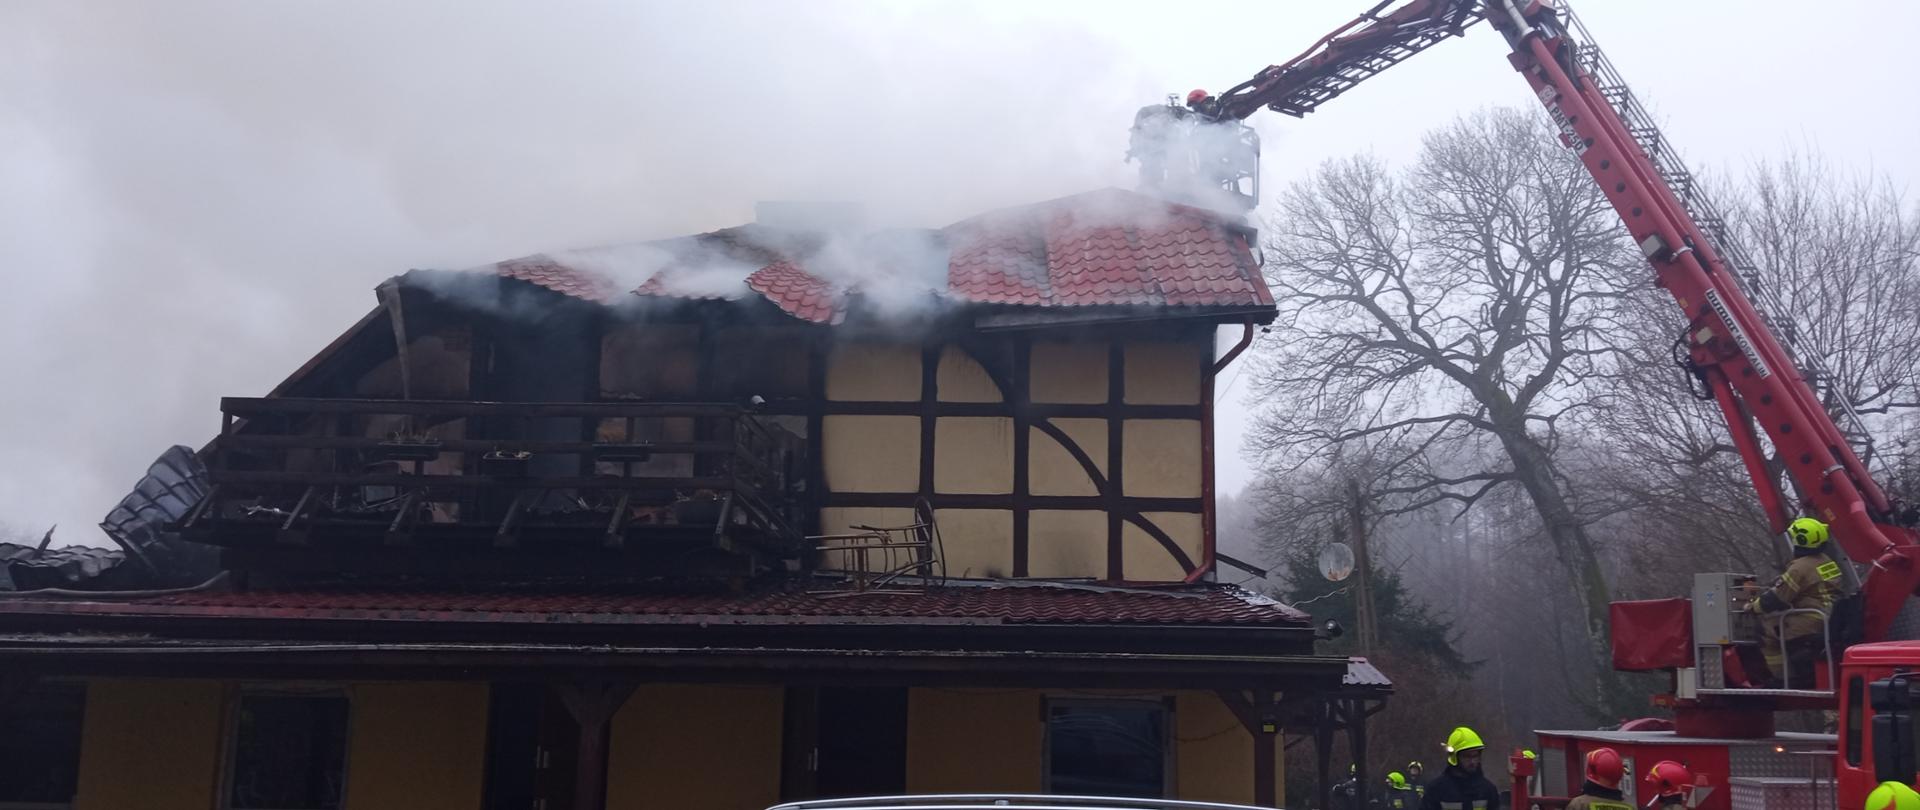 Fotografia przedstawia budynek z którego wydobywają się kłęby dymu. Konstrukcja dachu budynku częściowo zawalona, po prawej stronie kadru widać ramię rozstawionego podnośnika, w koszu podnośnika widoczny strażak.